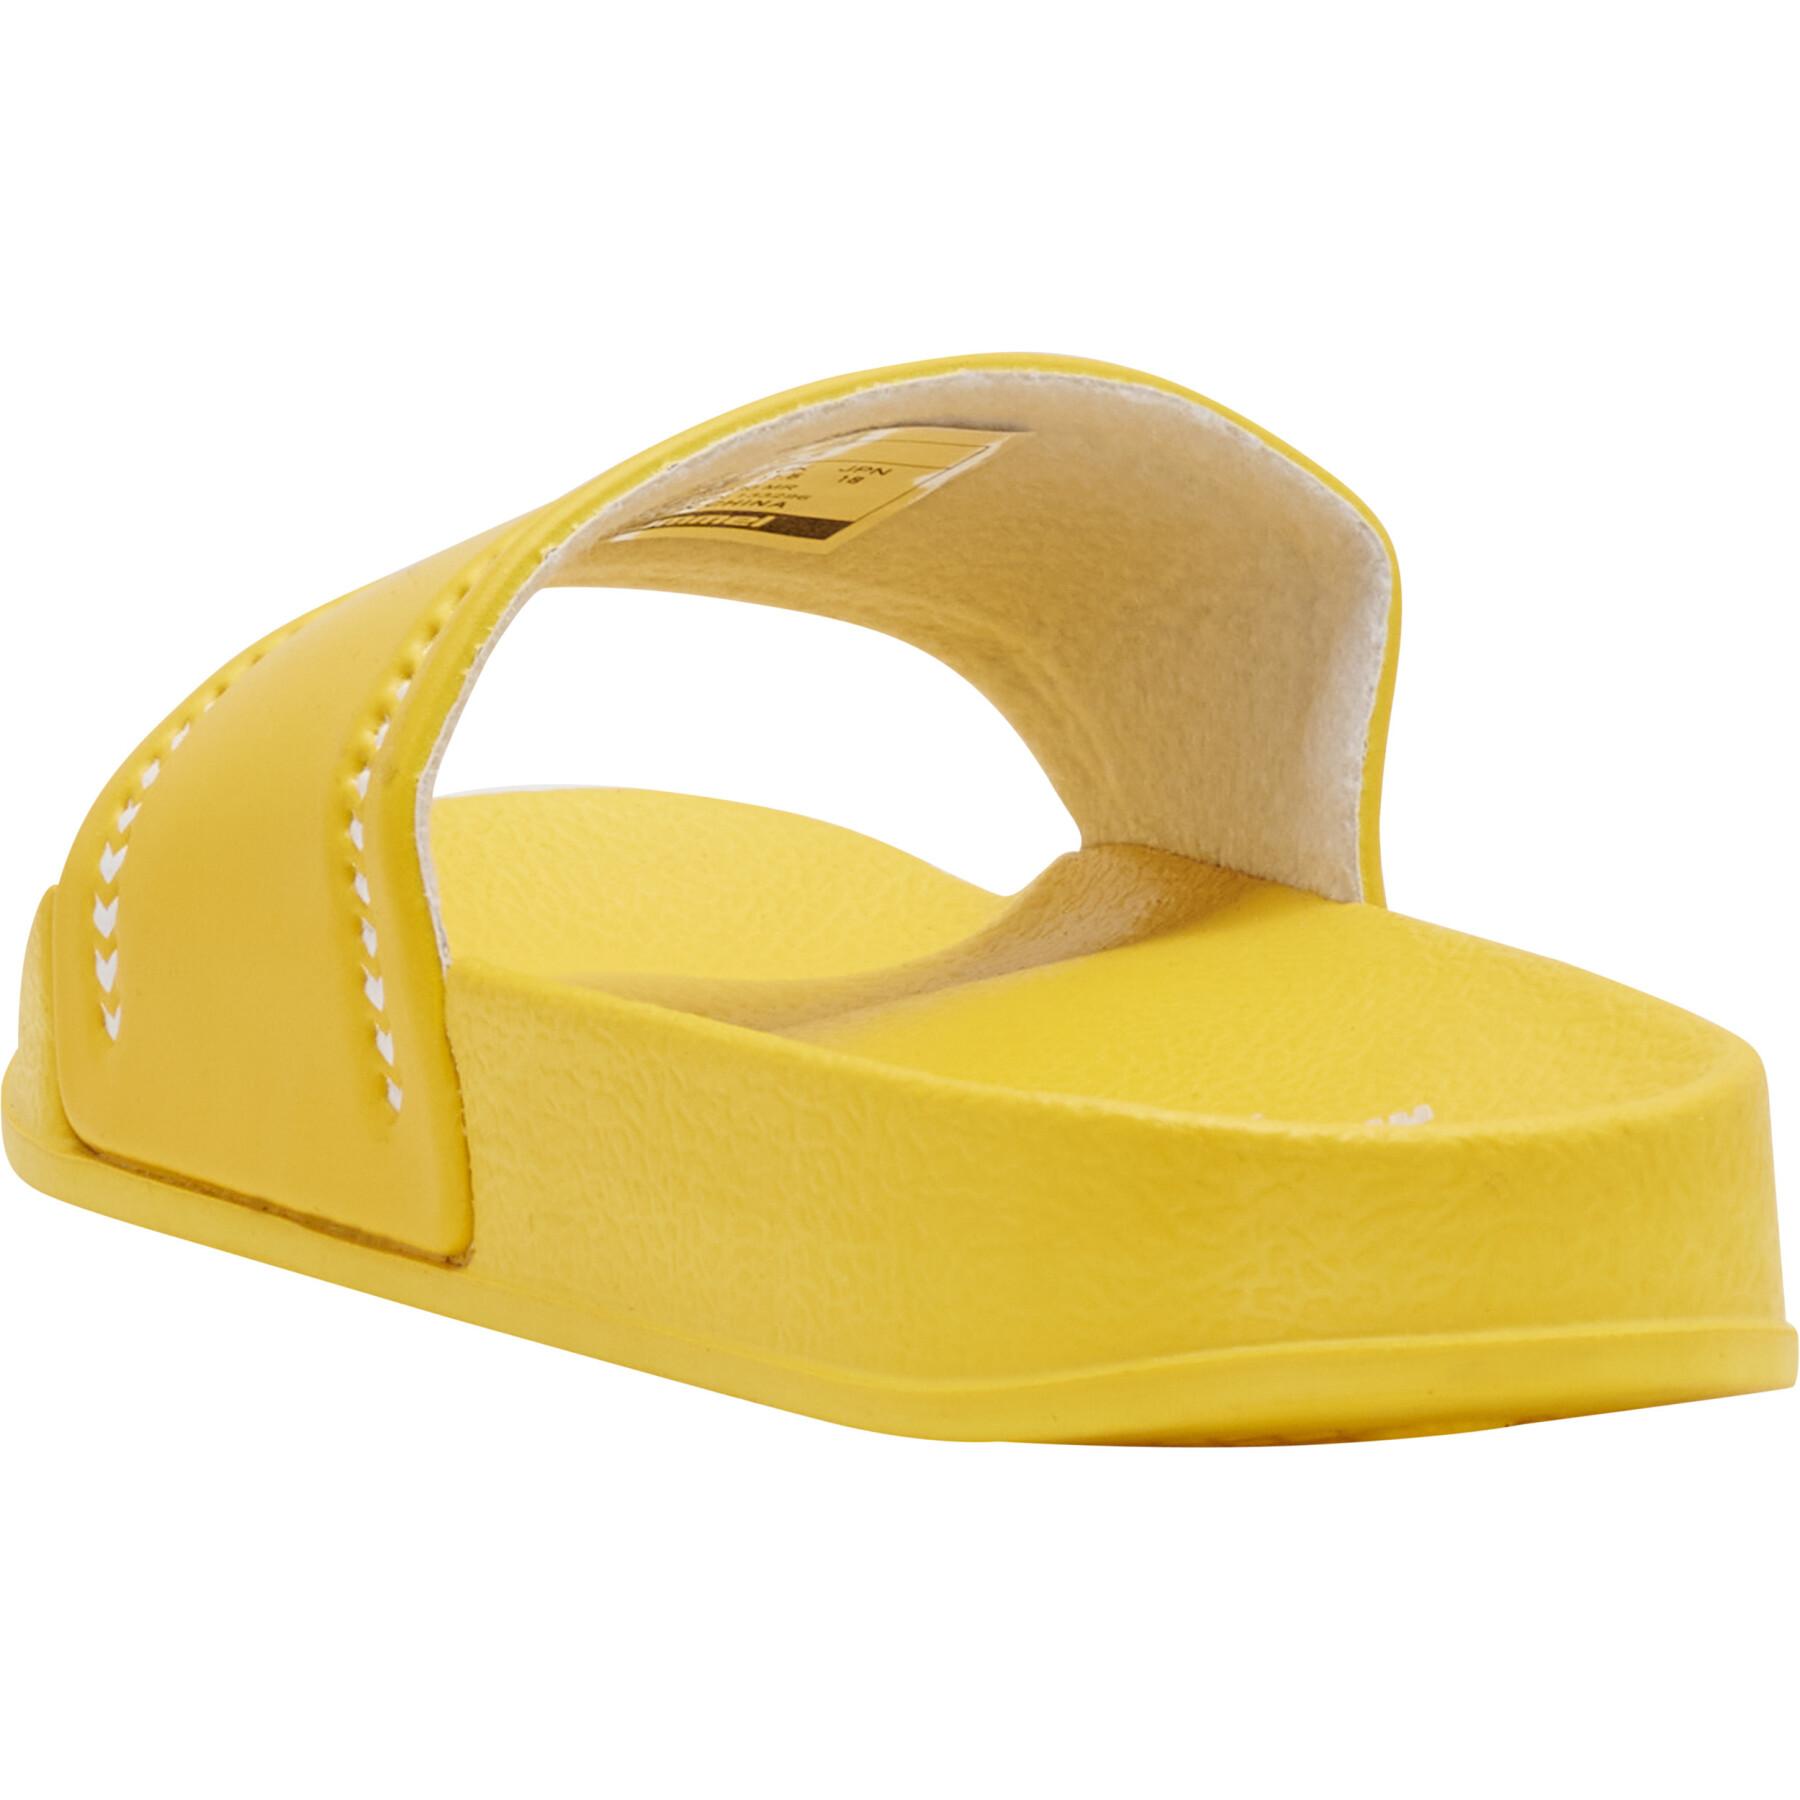 Children's swimming pool slippers Hummel